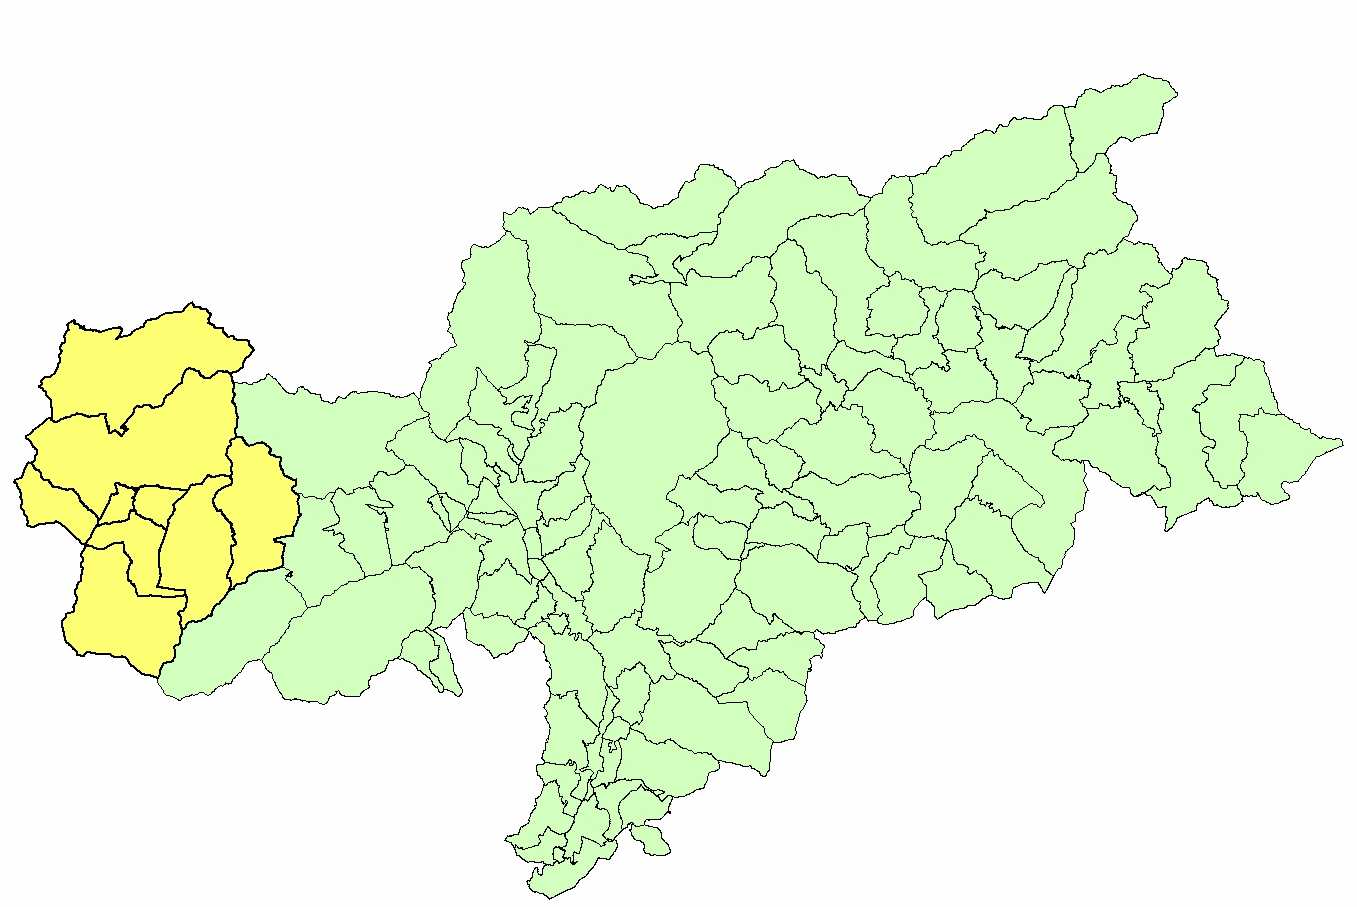 Tutta la Provincia di Bolzano é classificata in zona 4 Gemeinde mit erhöhter Erdbebengefährdung: 1) Graun im Vinschgau; 2) Mals 3) Taufers im Münstertal; 4) Glurn 5) Schluderns 6) Laas 7) Prad am